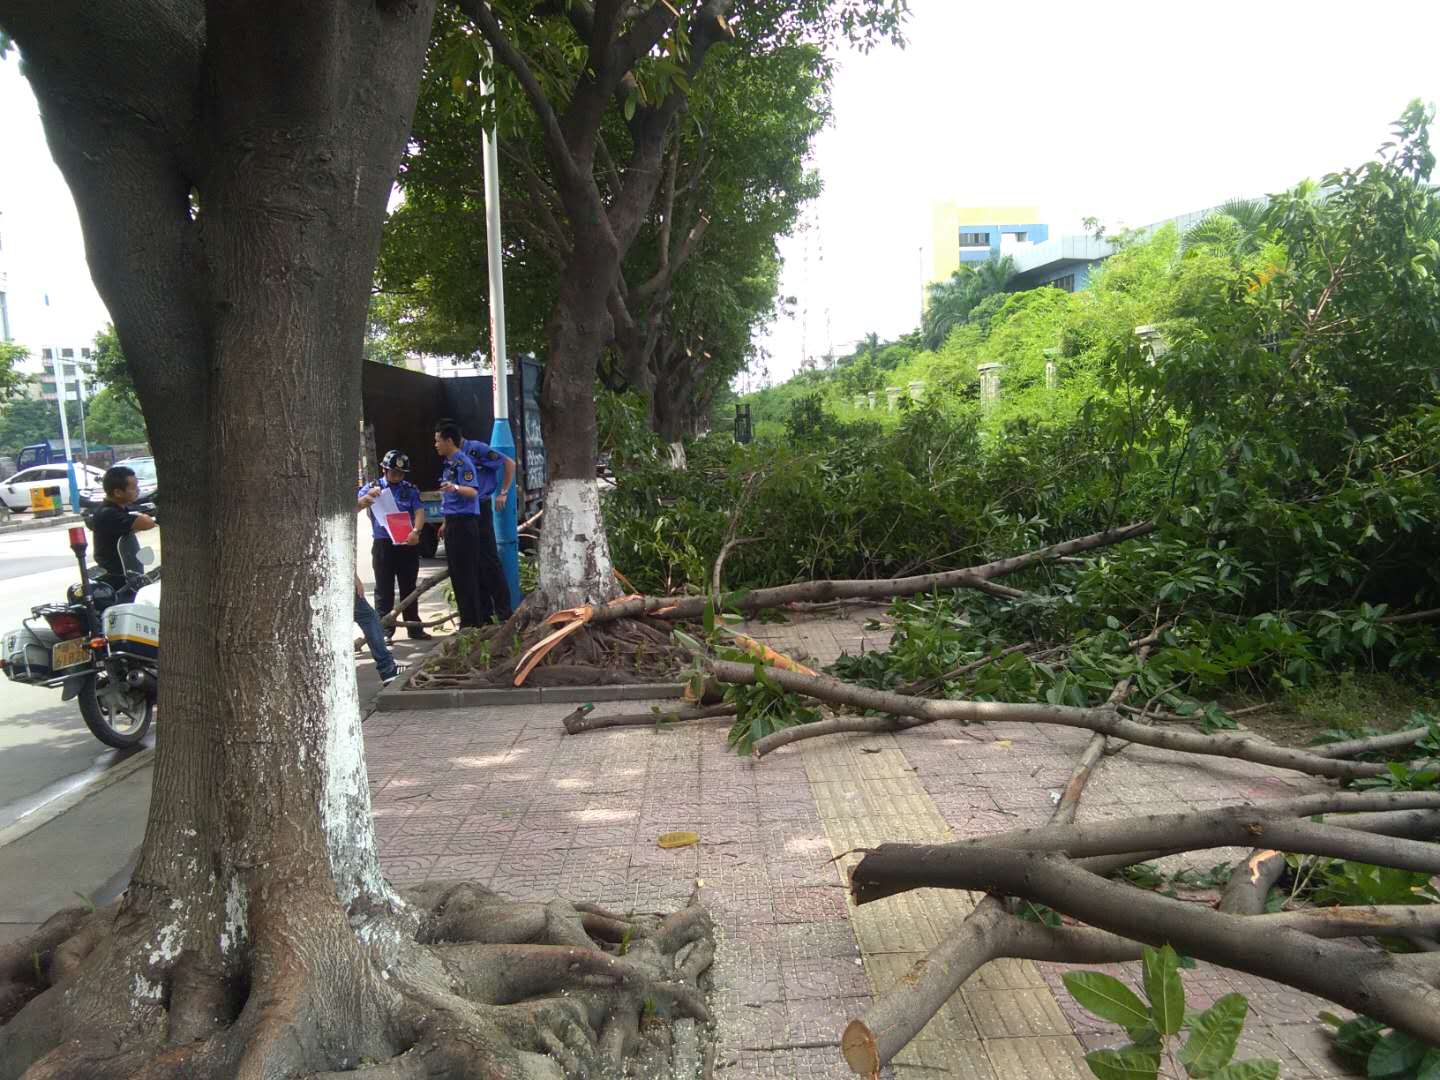 广州专业砍树 砍树工程队 专业修剪街道绿化 园林树木砍伐 小区危树砍伐